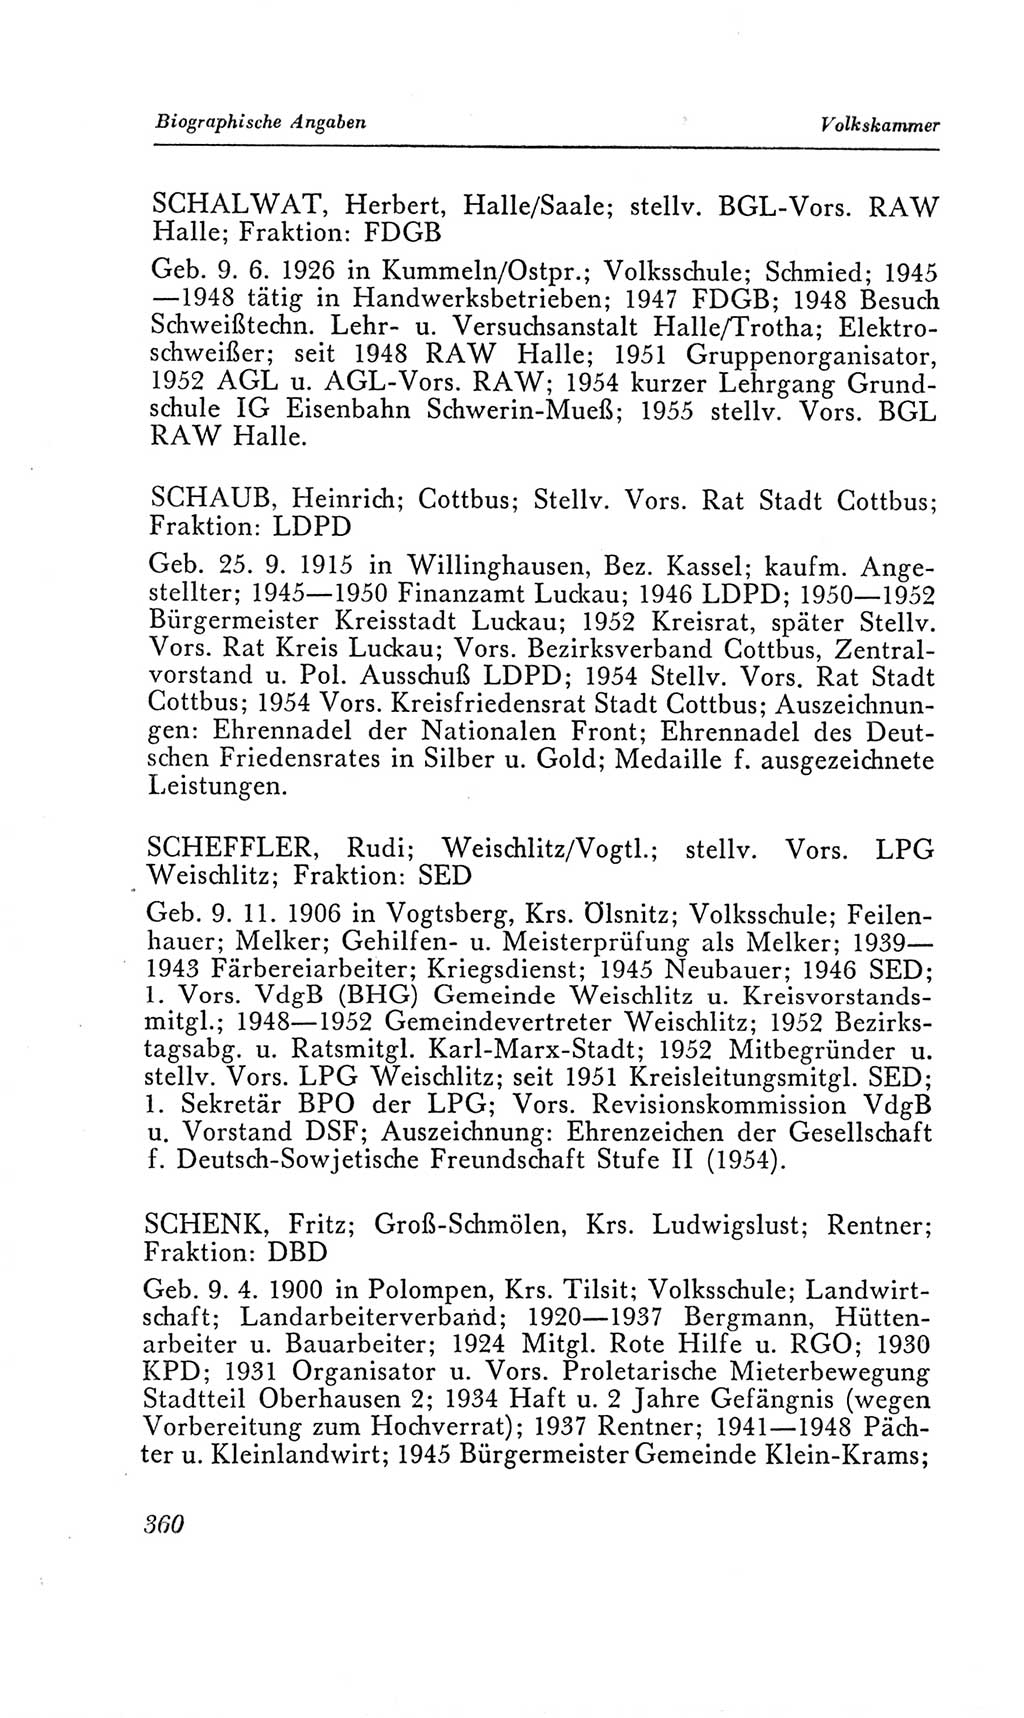 Handbuch der Volkskammer (VK) der Deutschen Demokratischen Republik (DDR), 2. Wahlperiode 1954-1958, Seite 360 (Hdb. VK. DDR, 2. WP. 1954-1958, S. 360)